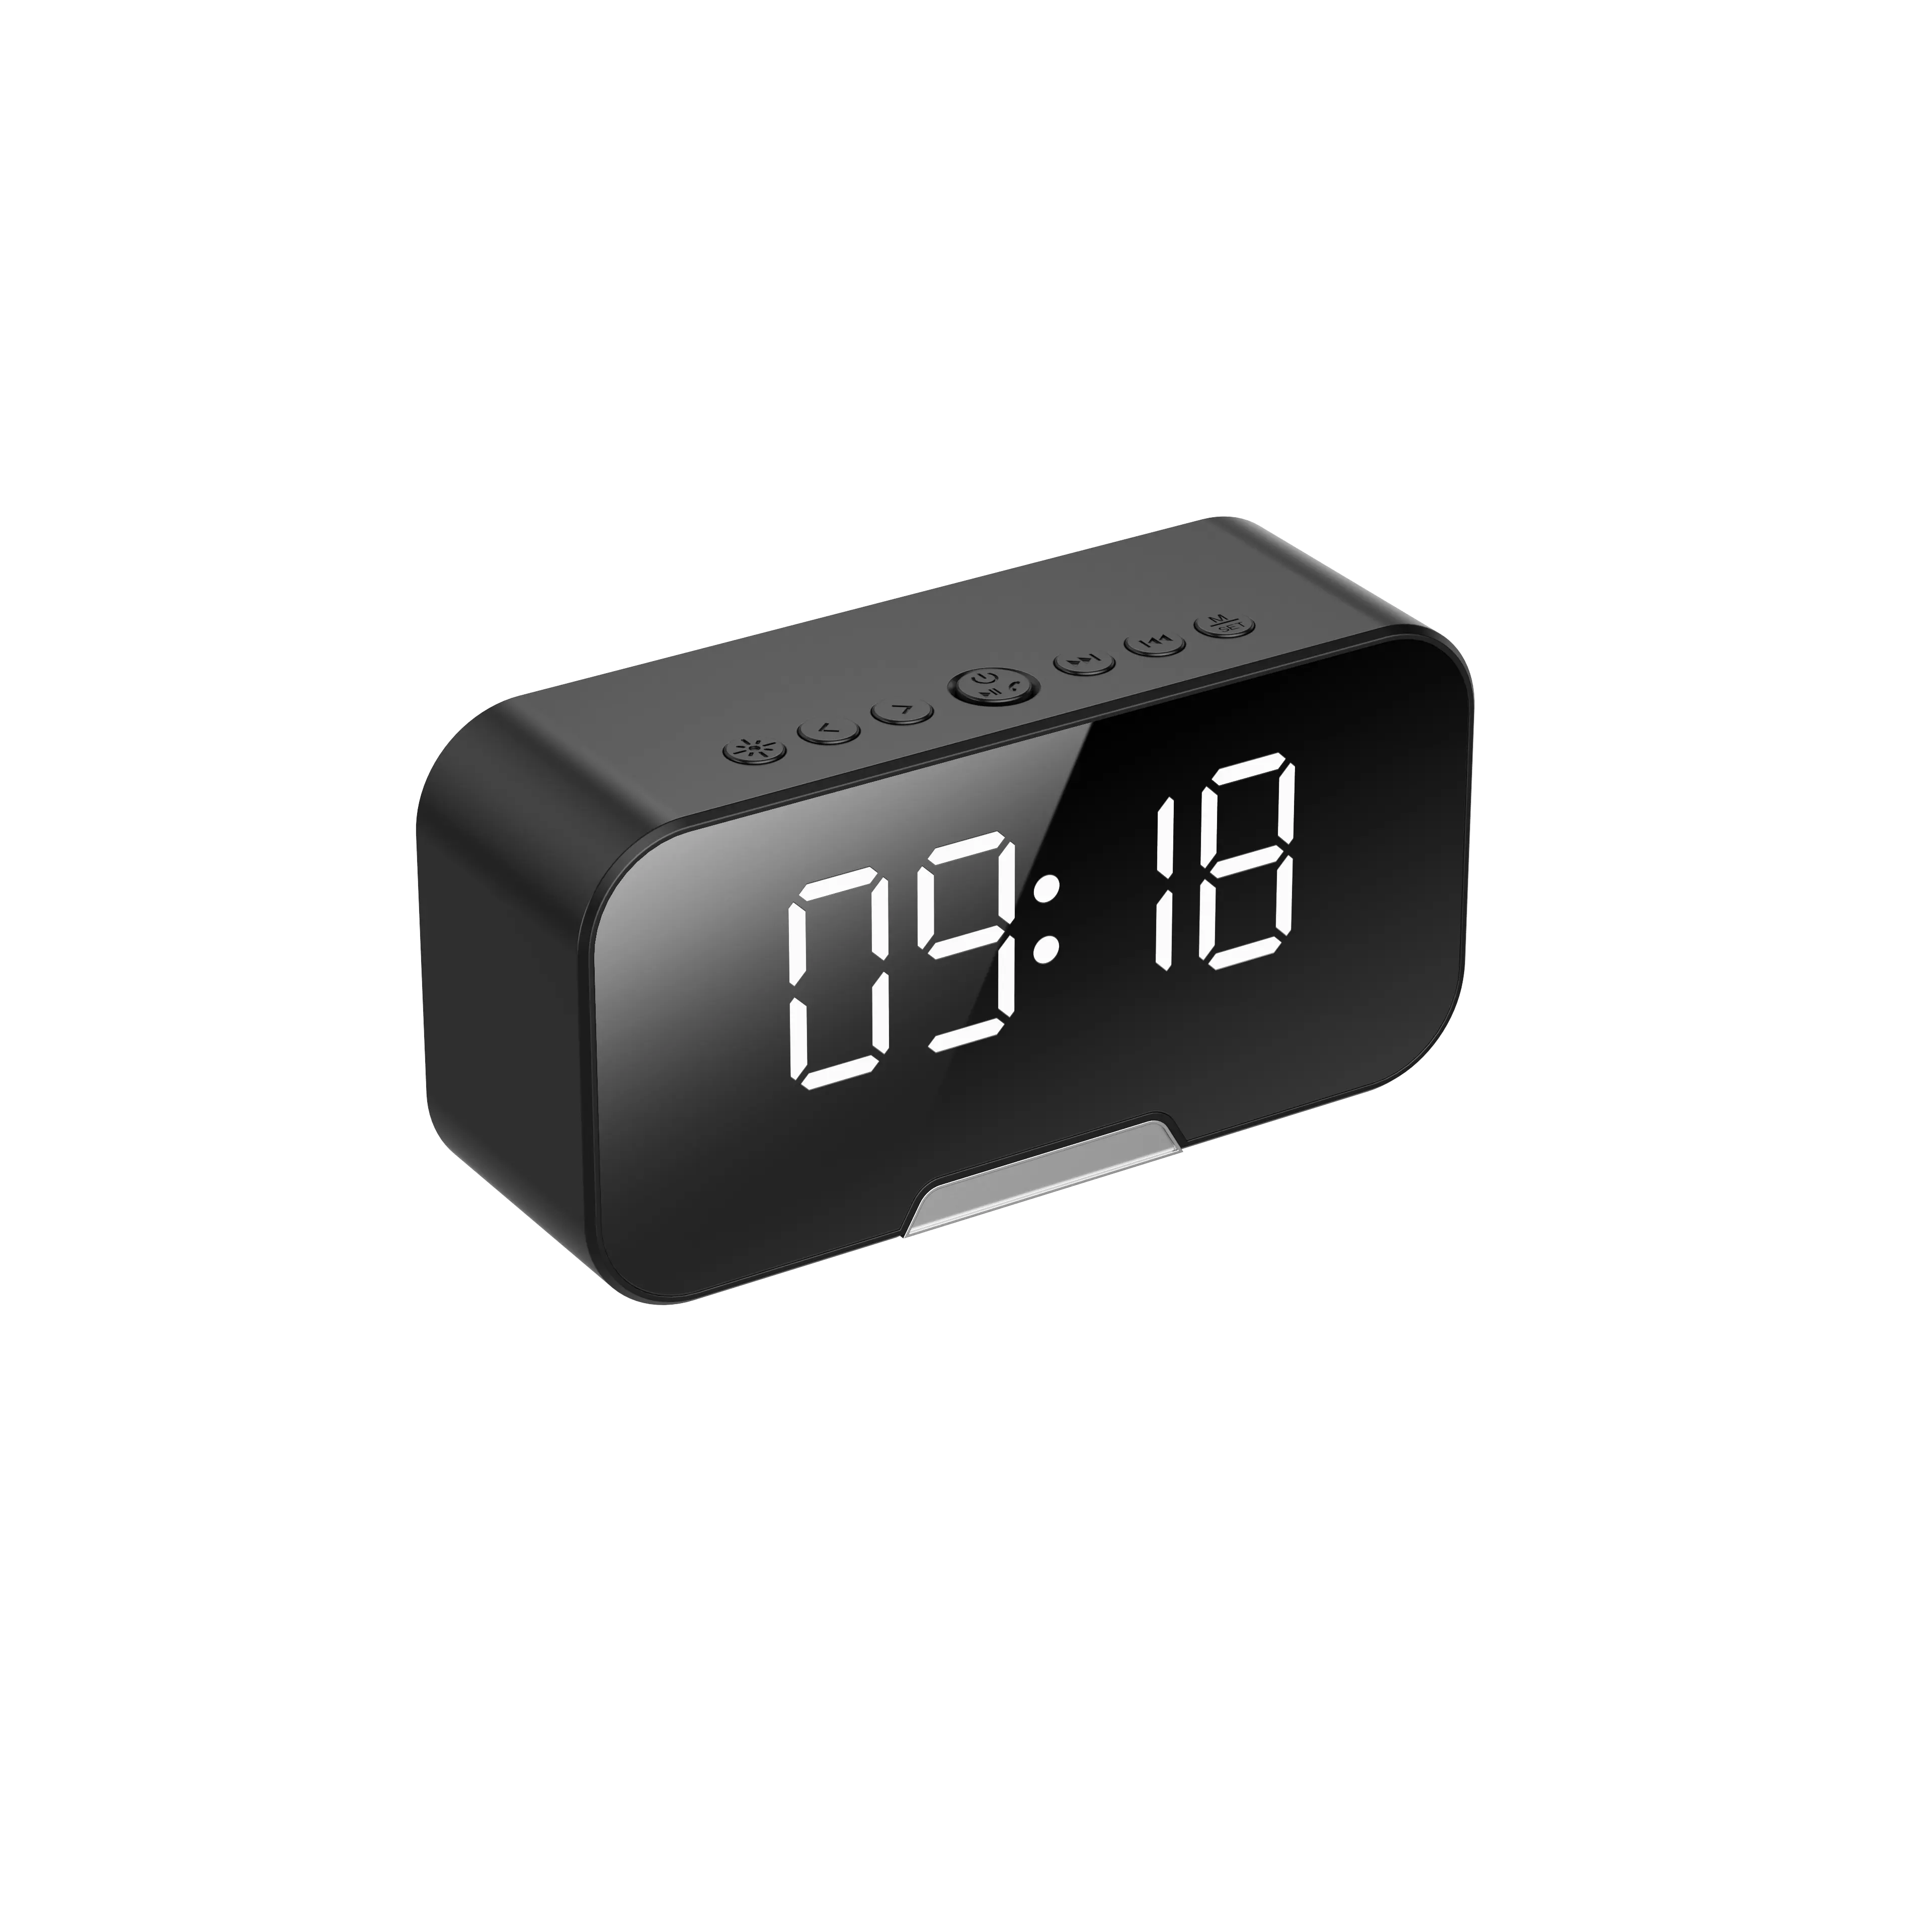 Minialtavoz con alarma y Bluetooth, dispositivo con pantalla LED, micrófono FM, función de repetición de sueño, despertador, inalámbrico